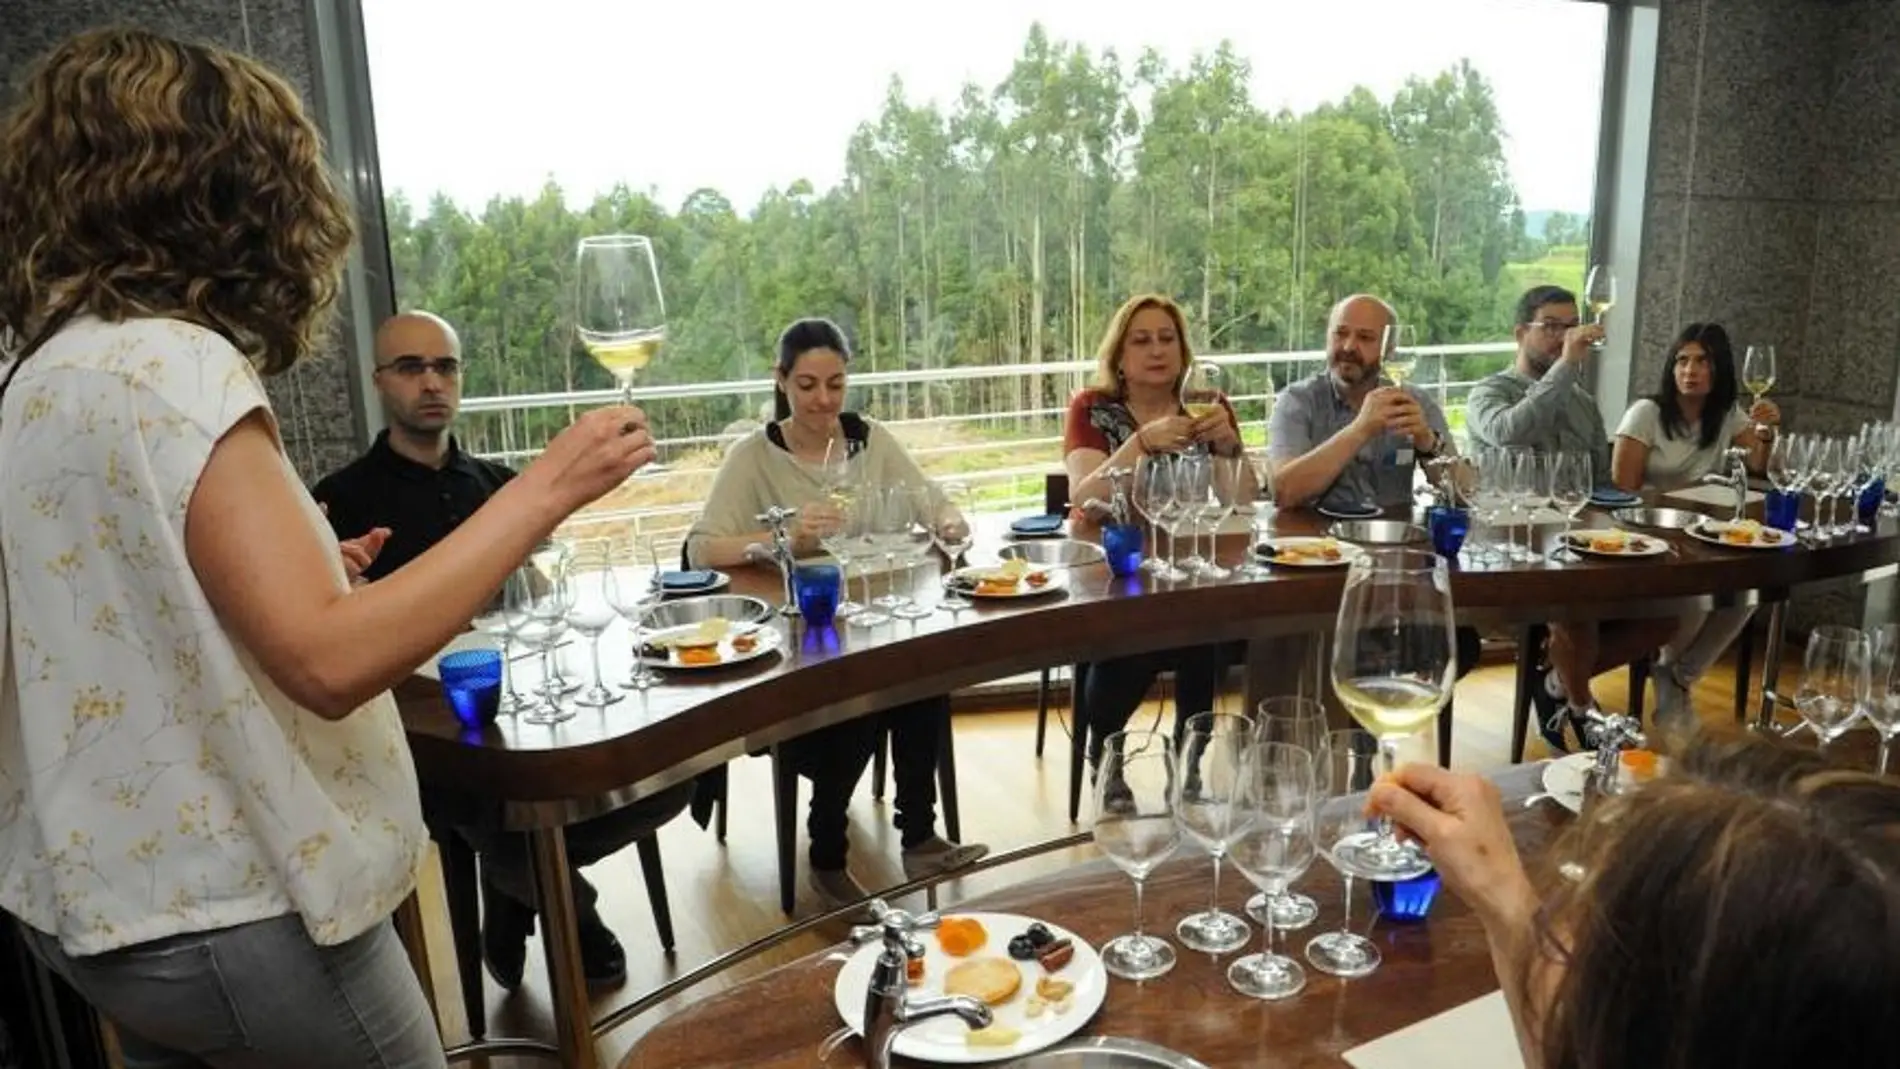 Presentadas as rutas dos viños galegas